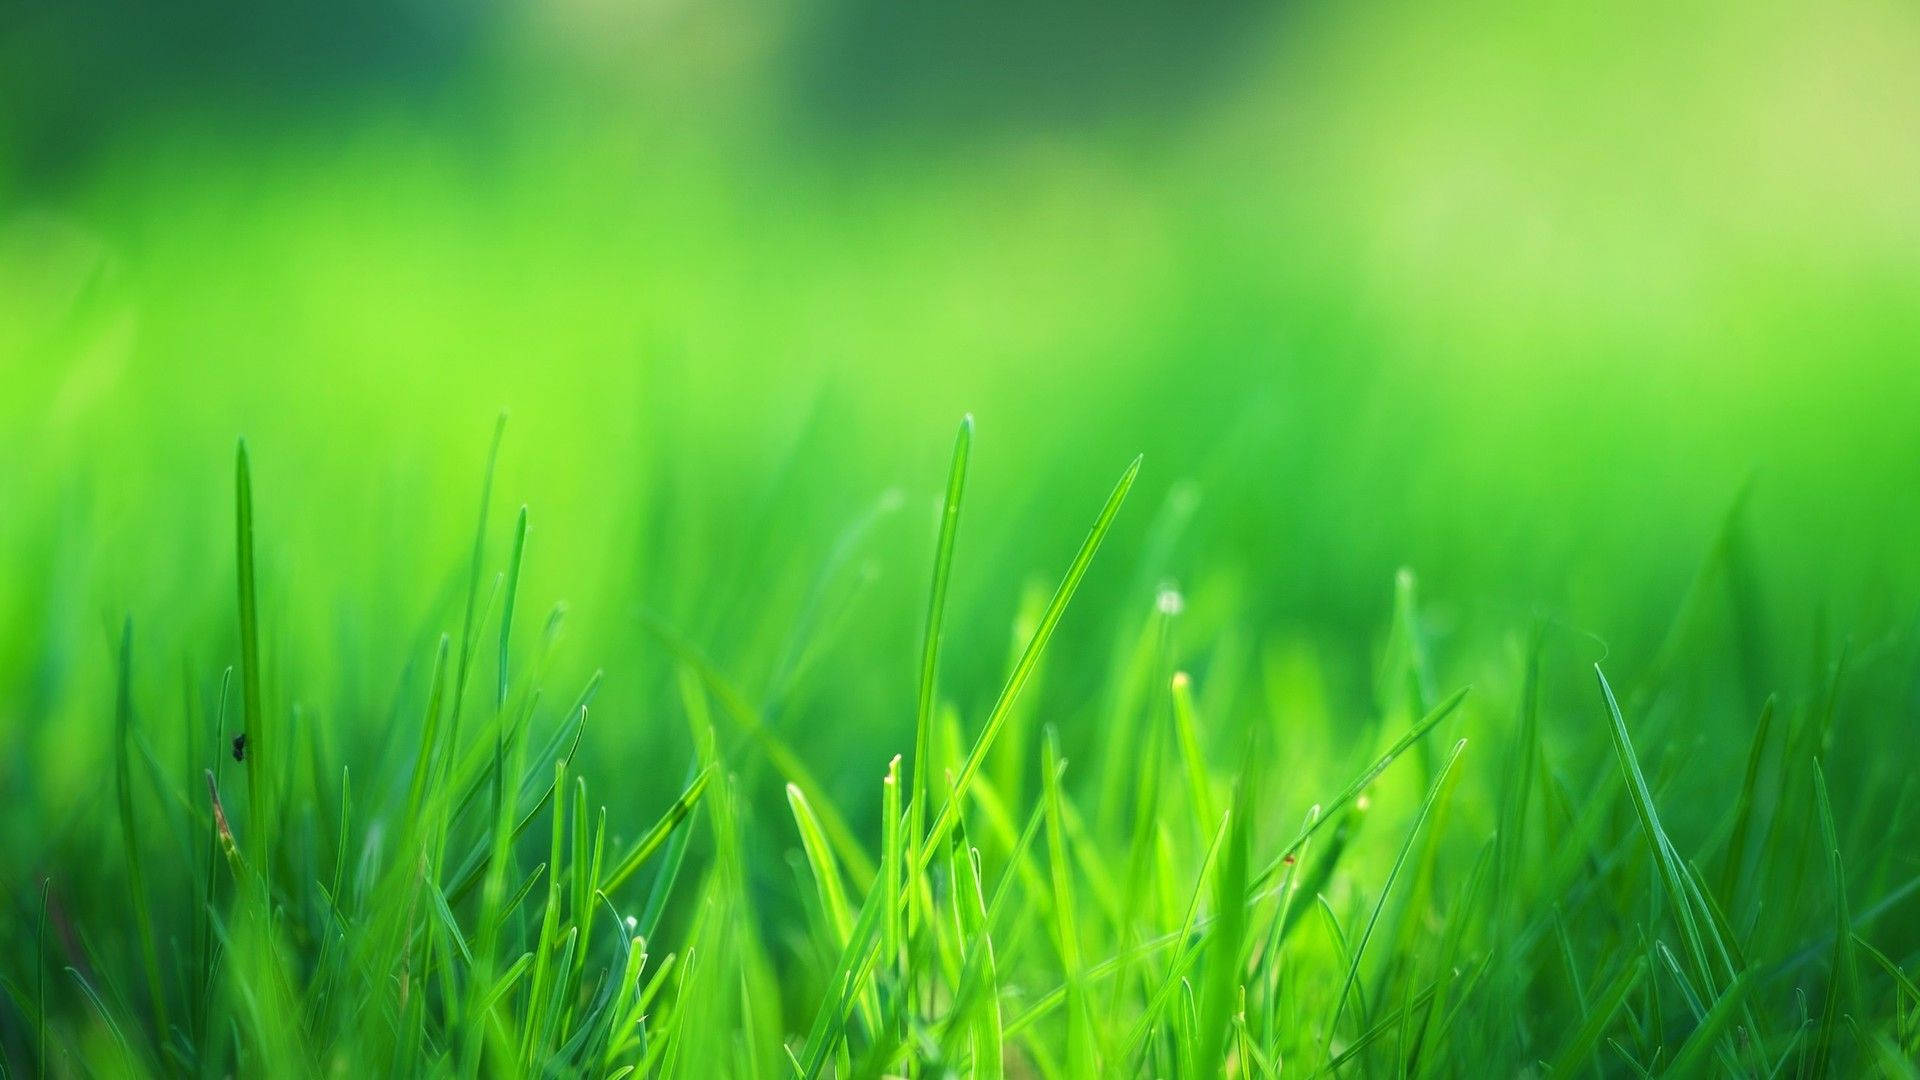 "A Lush and Fresh Green Grass Field" Wallpaper